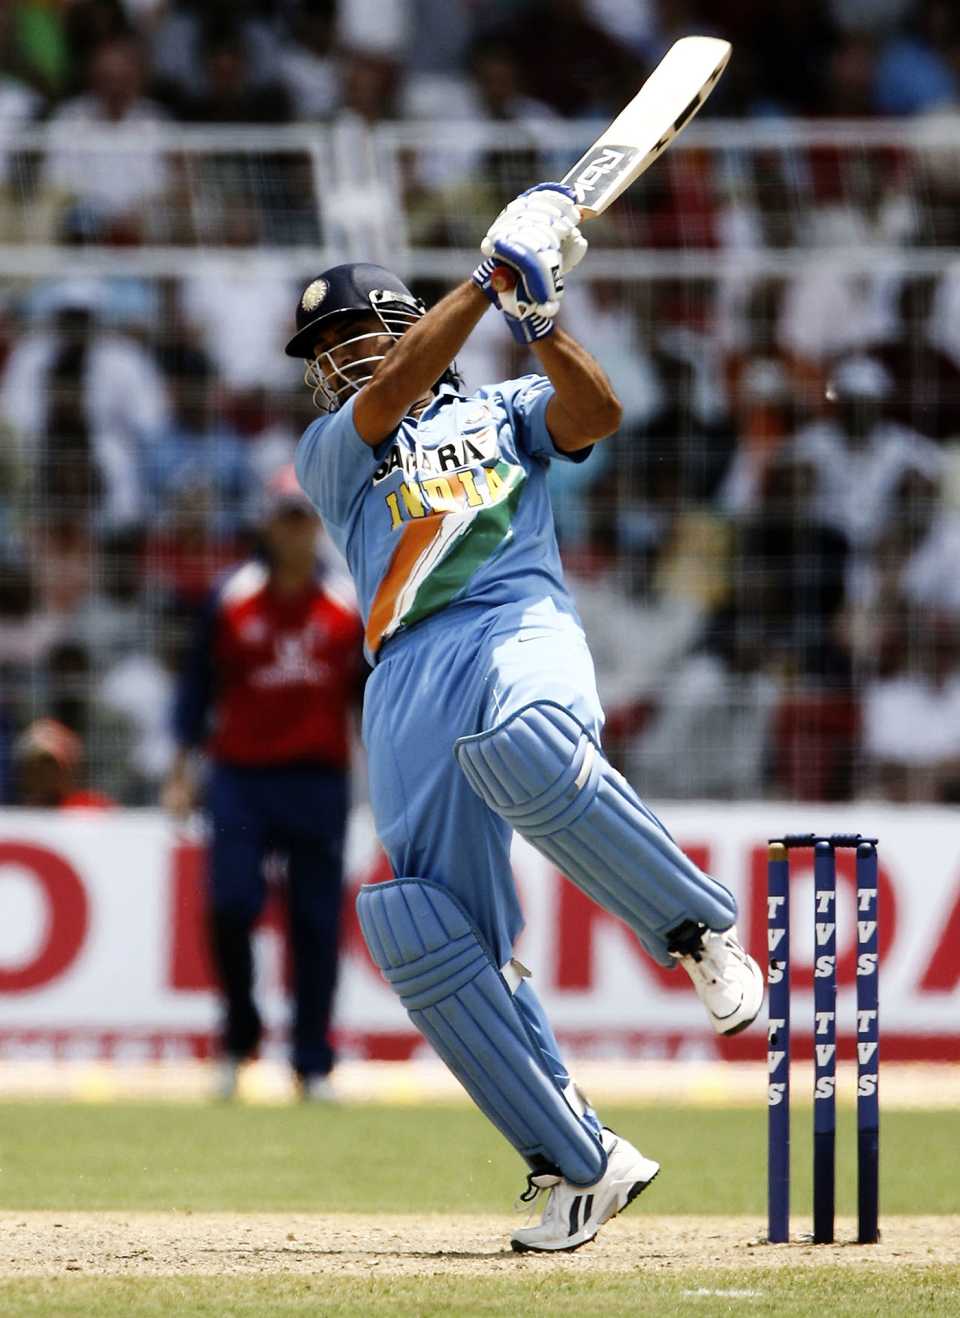 MS Dhoni hits out, India v England, 3rd ODI, Goa, April 3, 2006